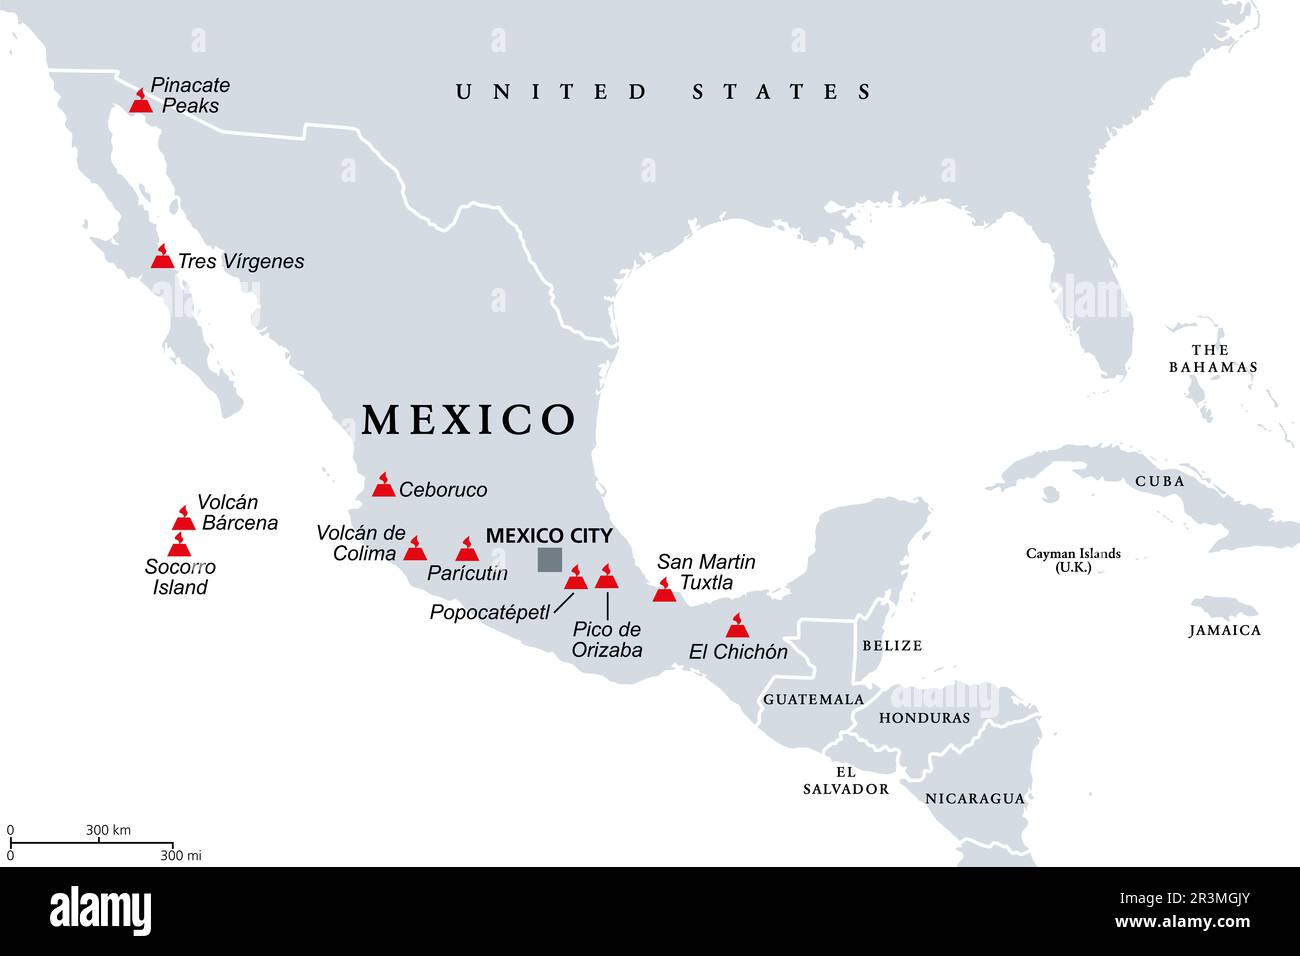 Transmexikanischer Vulkangürtel, Karte mit den wichtigsten aktiven Vulkanen Mexikos. Auch bekannt als Transvulkanischer Gürtel und vor Ort als Sierra Nevada. Stockfoto